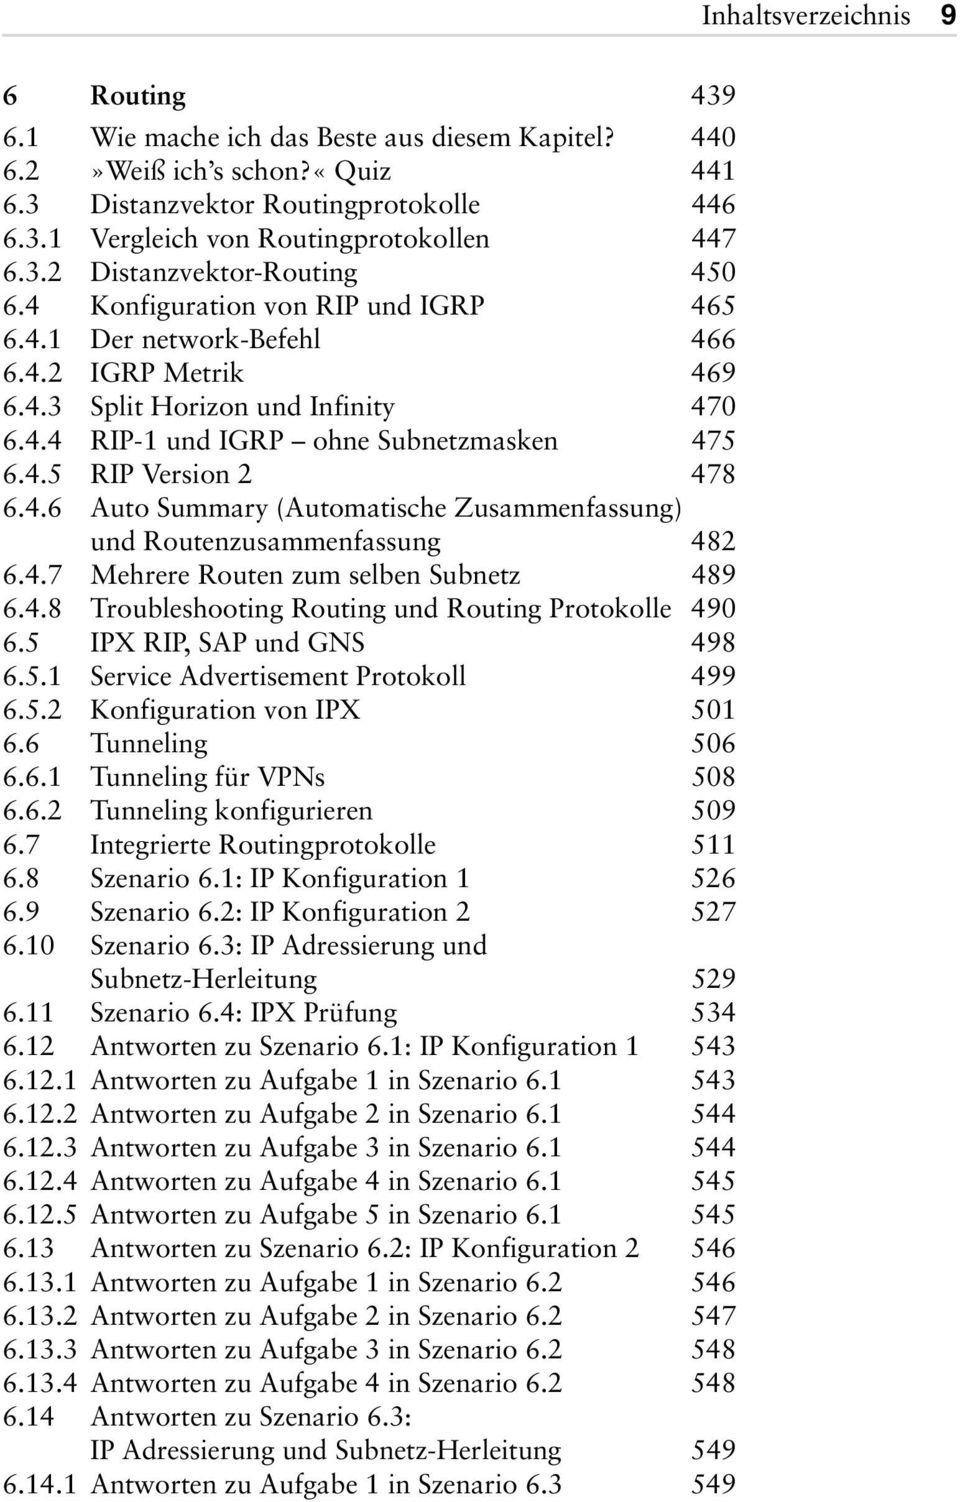 4.5 RIP Version 2 478 6.4.6 Auto Summary (Automatische Zusammenfassung) und Routenzusammenfassung 482 6.4.7 Mehrere Routen zum selben Subnetz 489 6.4.8 Troubleshooting Routing und Routing Protokolle 490 6.